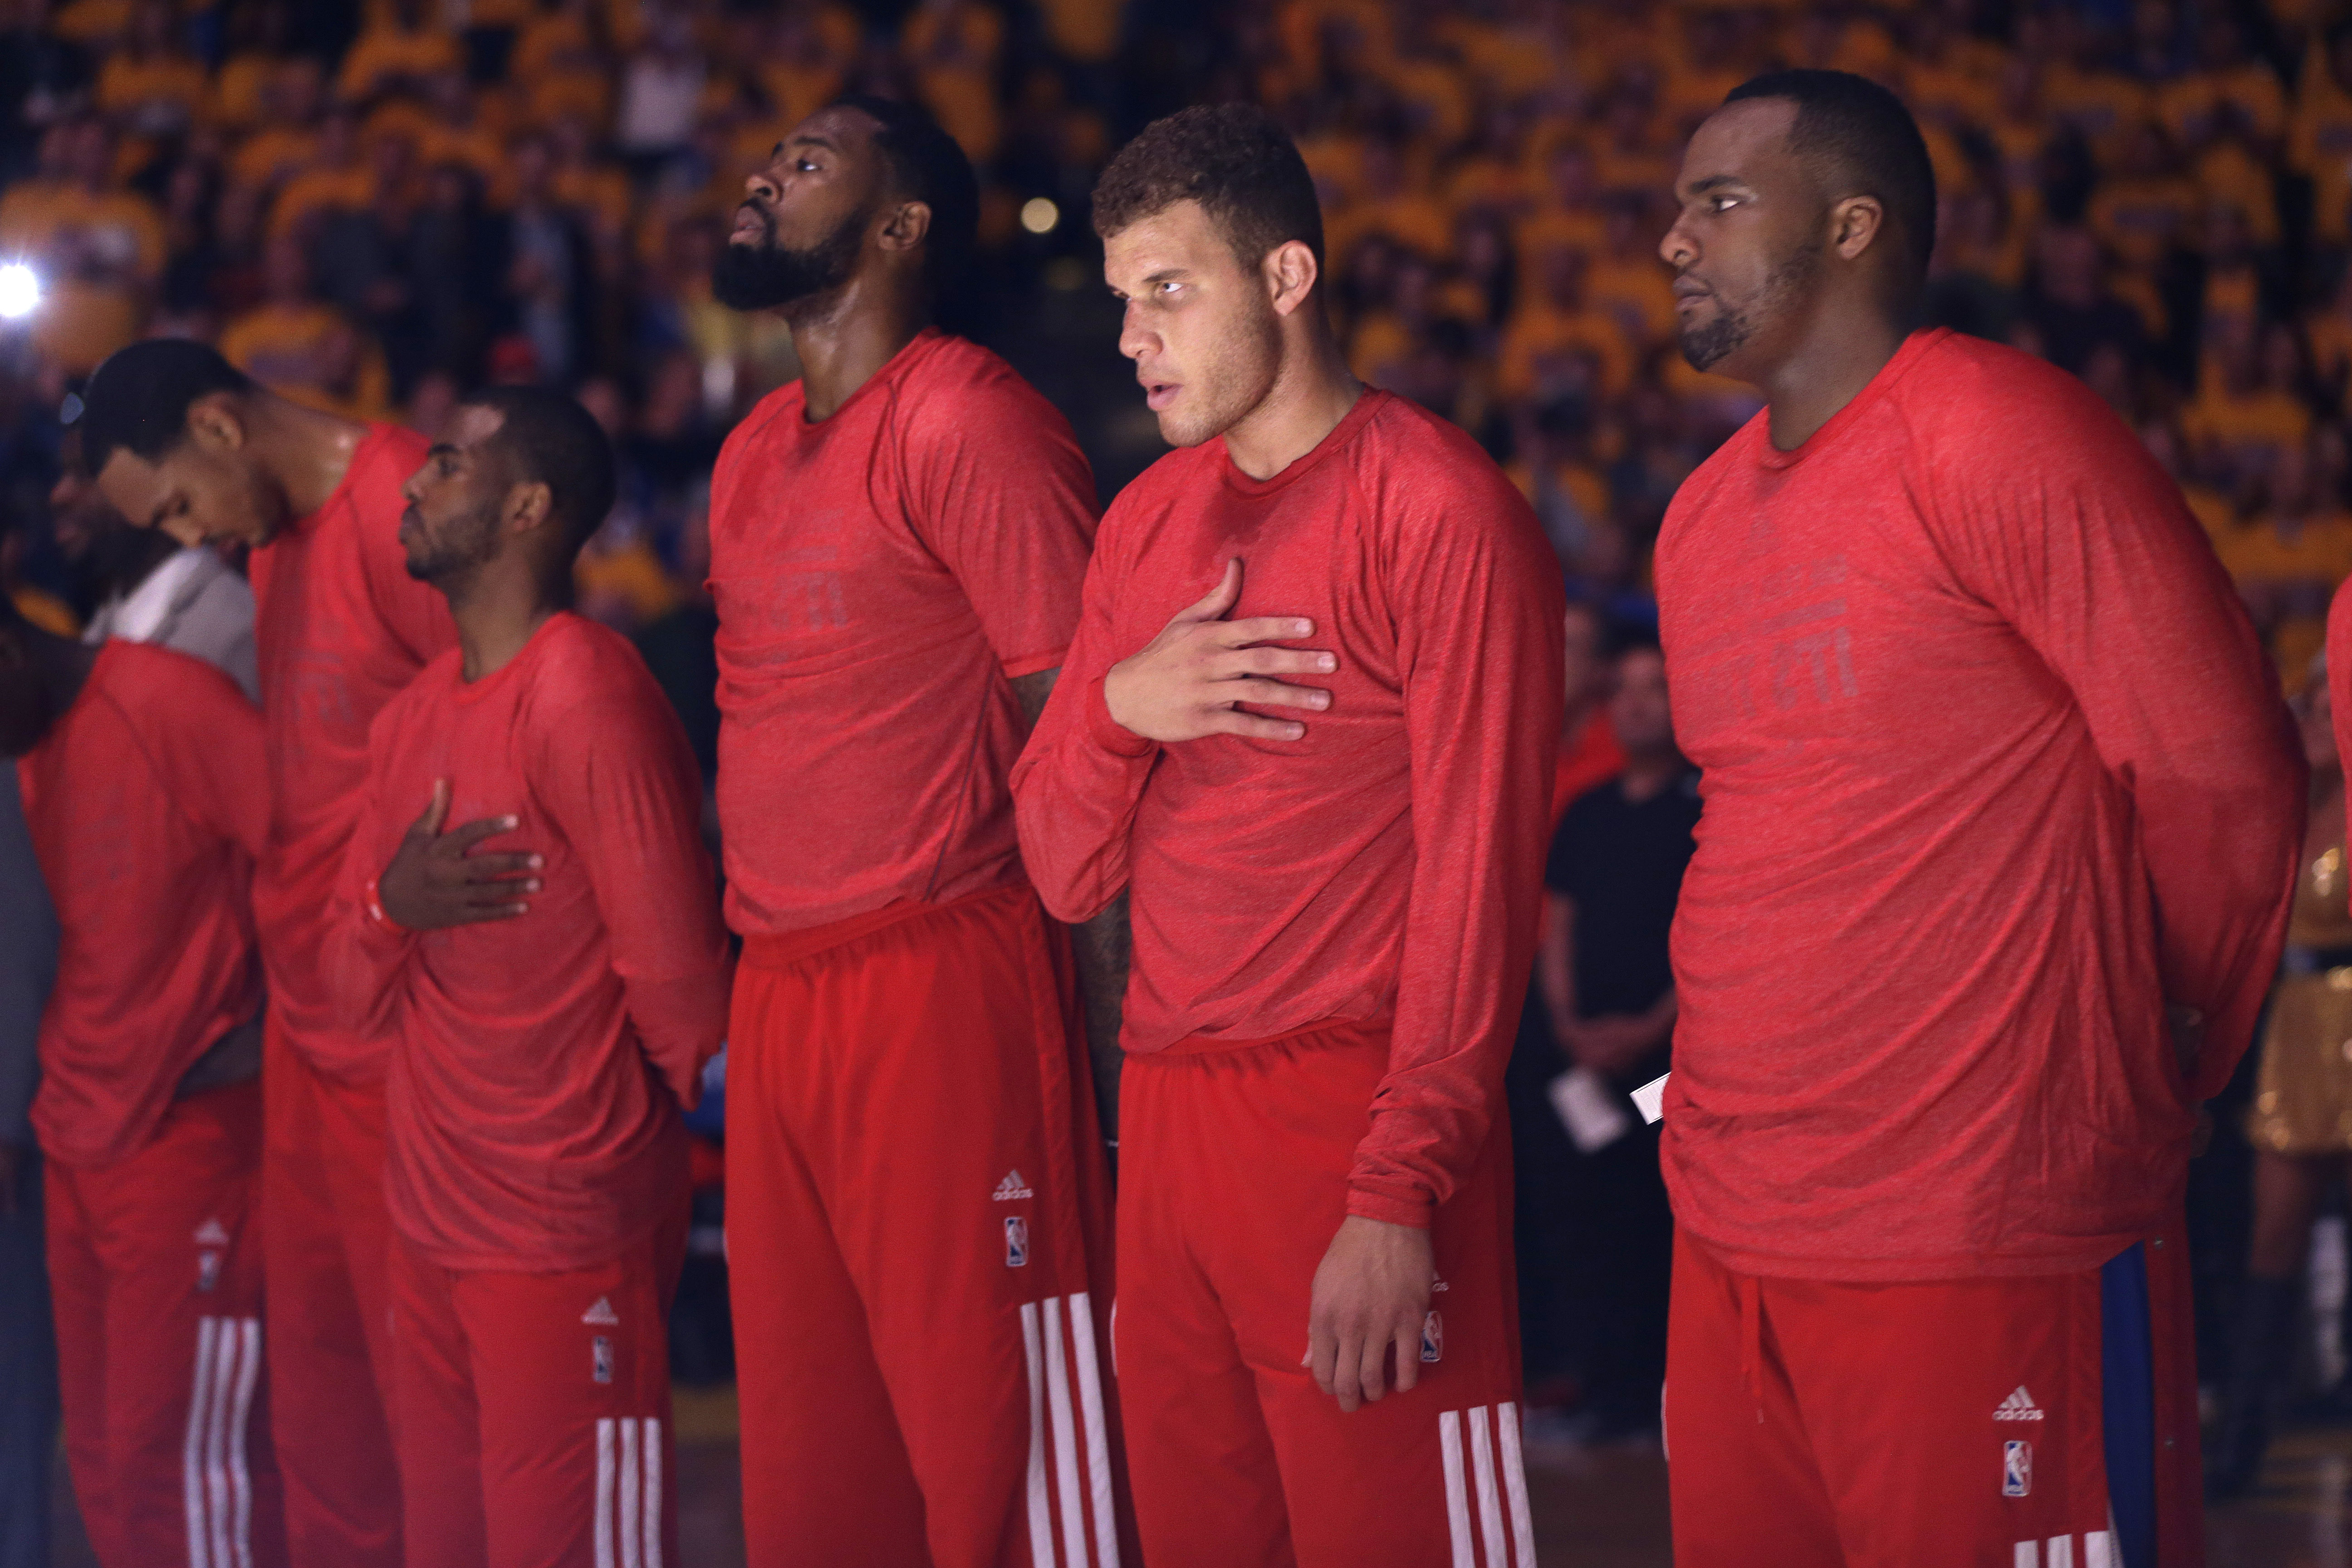 Los Angeles Clippers spelare genomförde en protest mot sin ägare genom att inte bära kläder med klubbskölden.